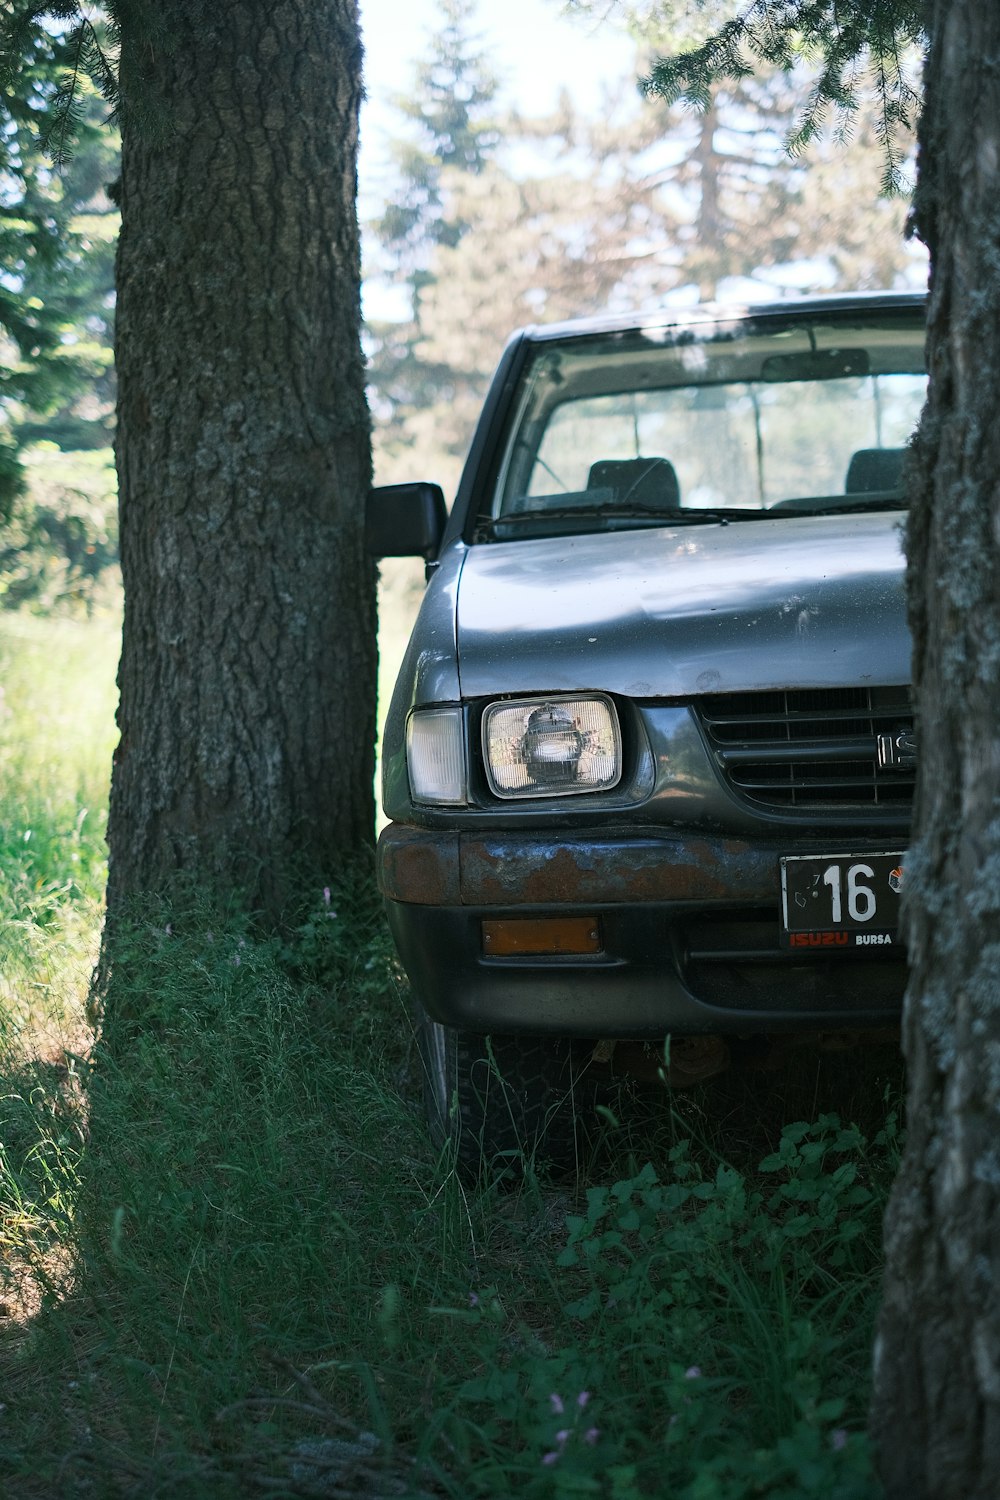 un coche aparcado en el bosque detrás de unos árboles